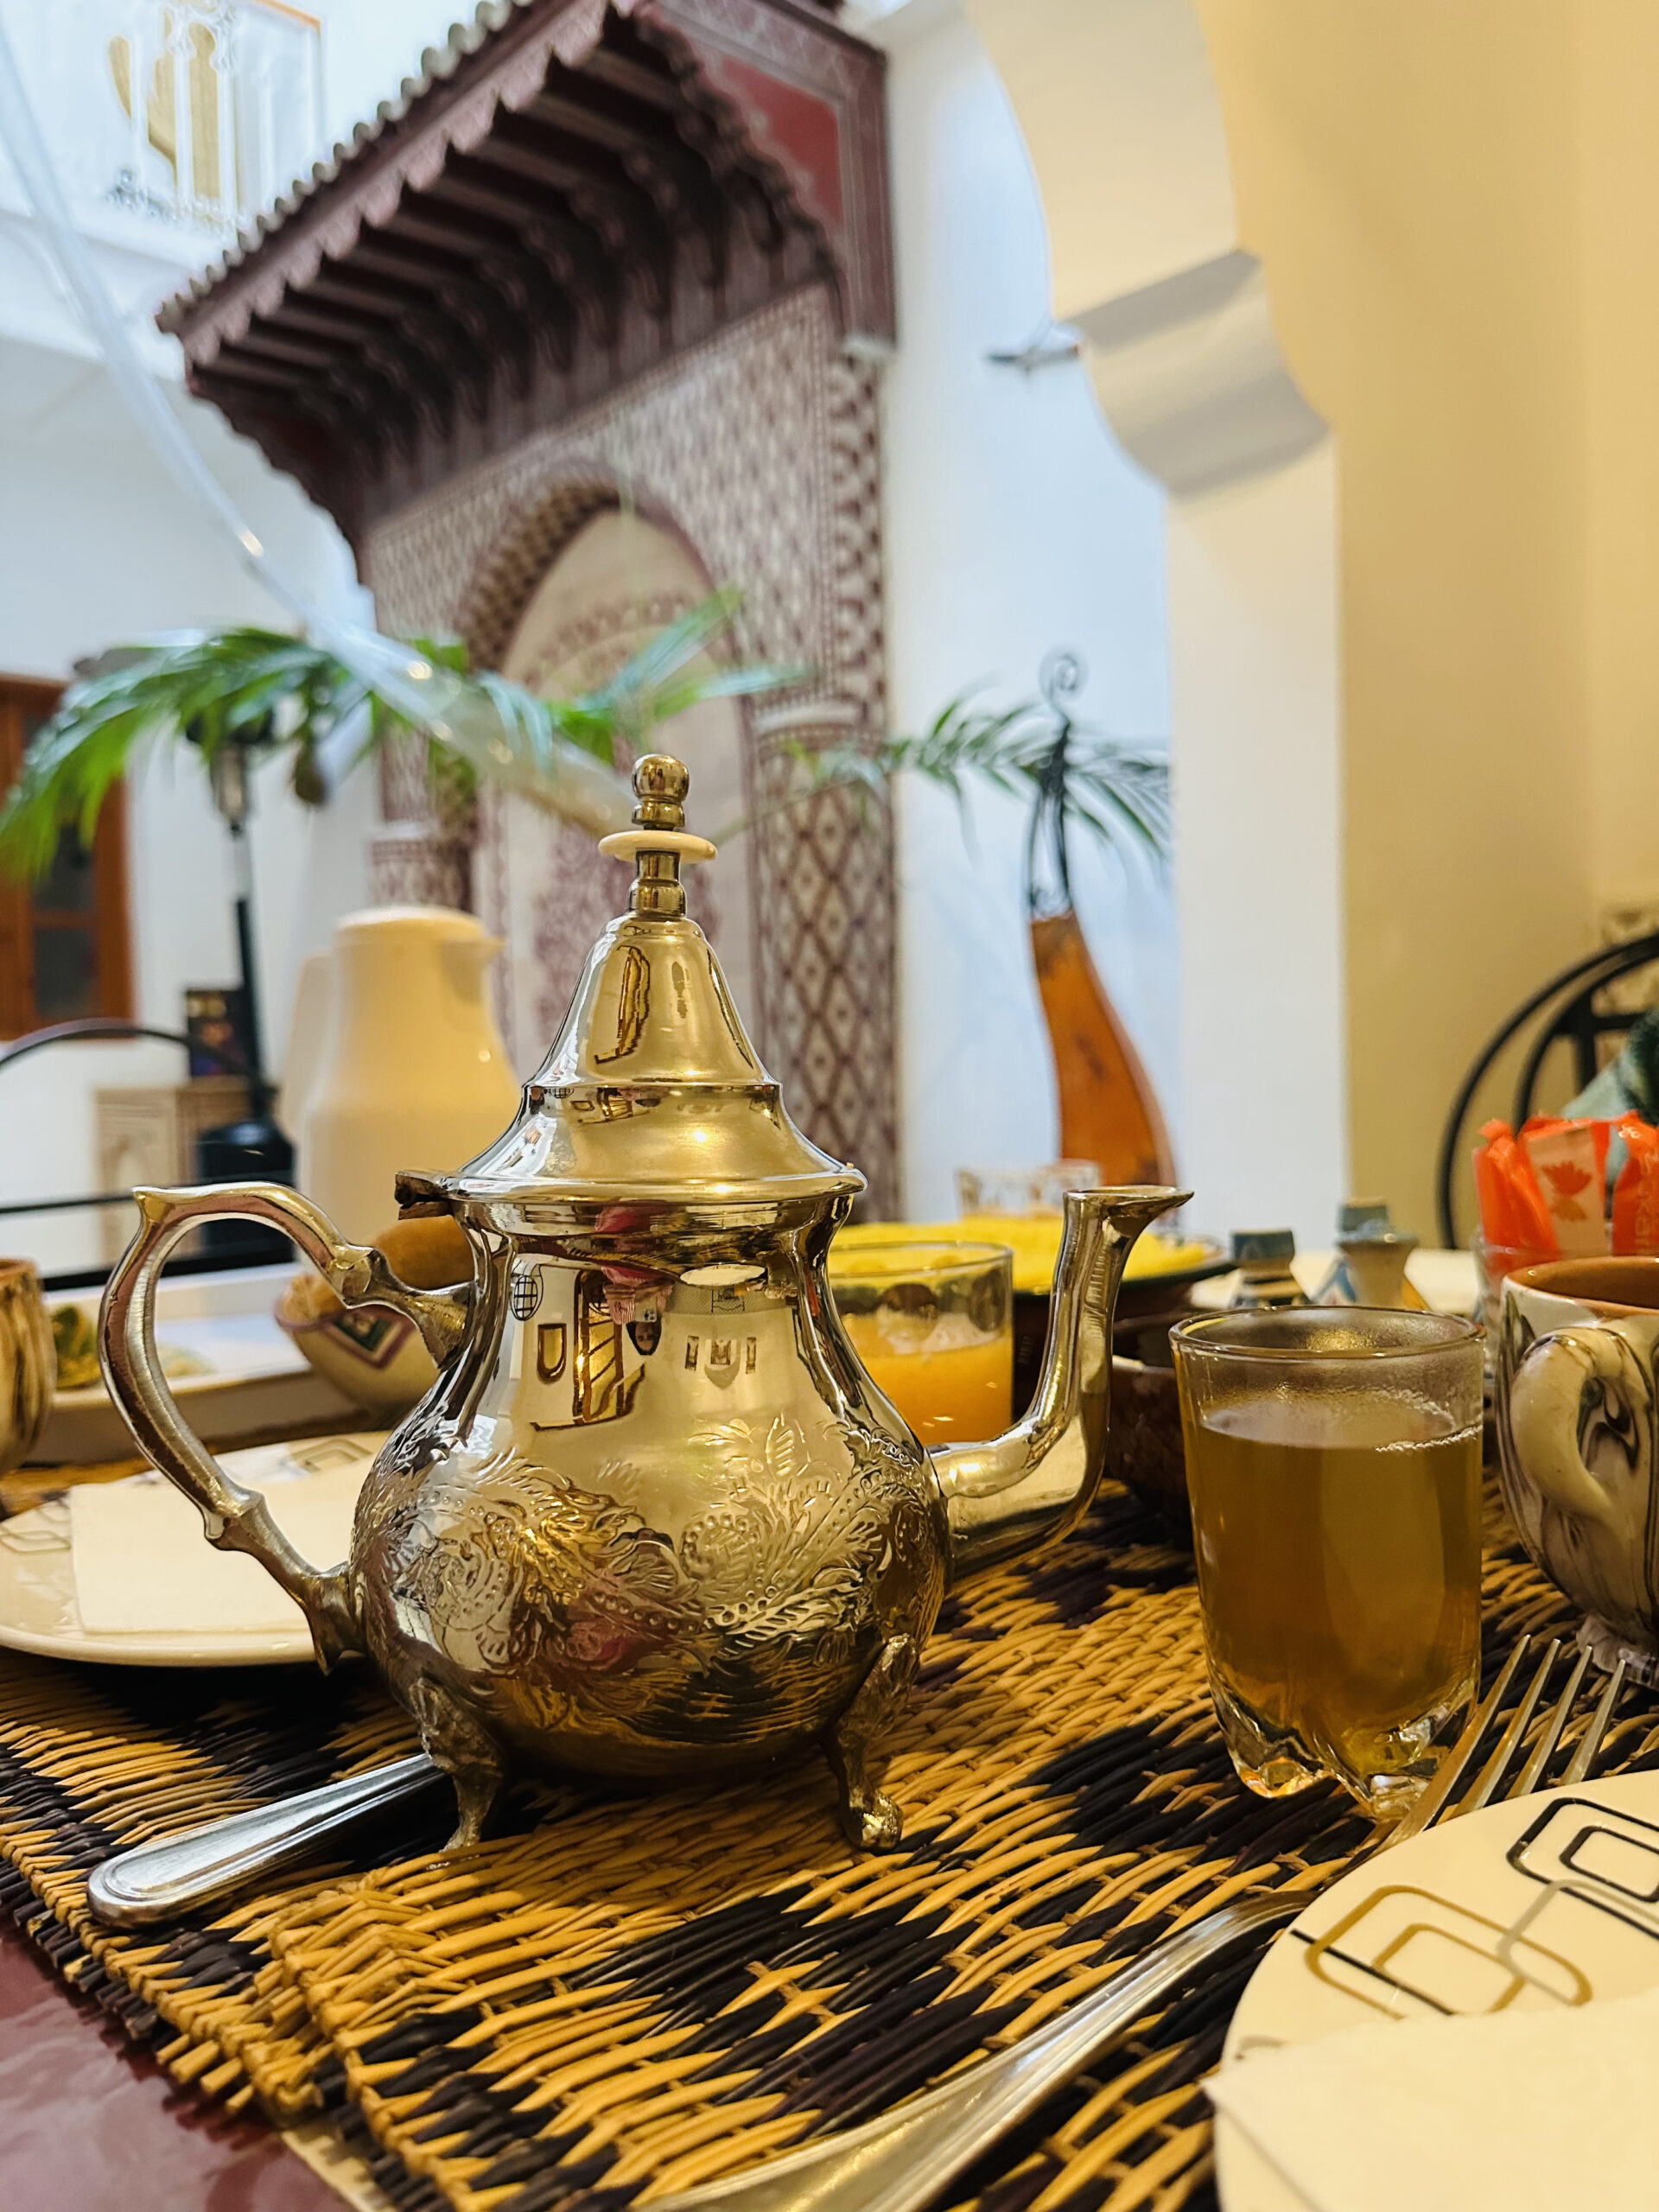 Marrakechi aroma, avagy ízek, illatok, látványok és dallamok… Élet az Atlaszban a földrengés után